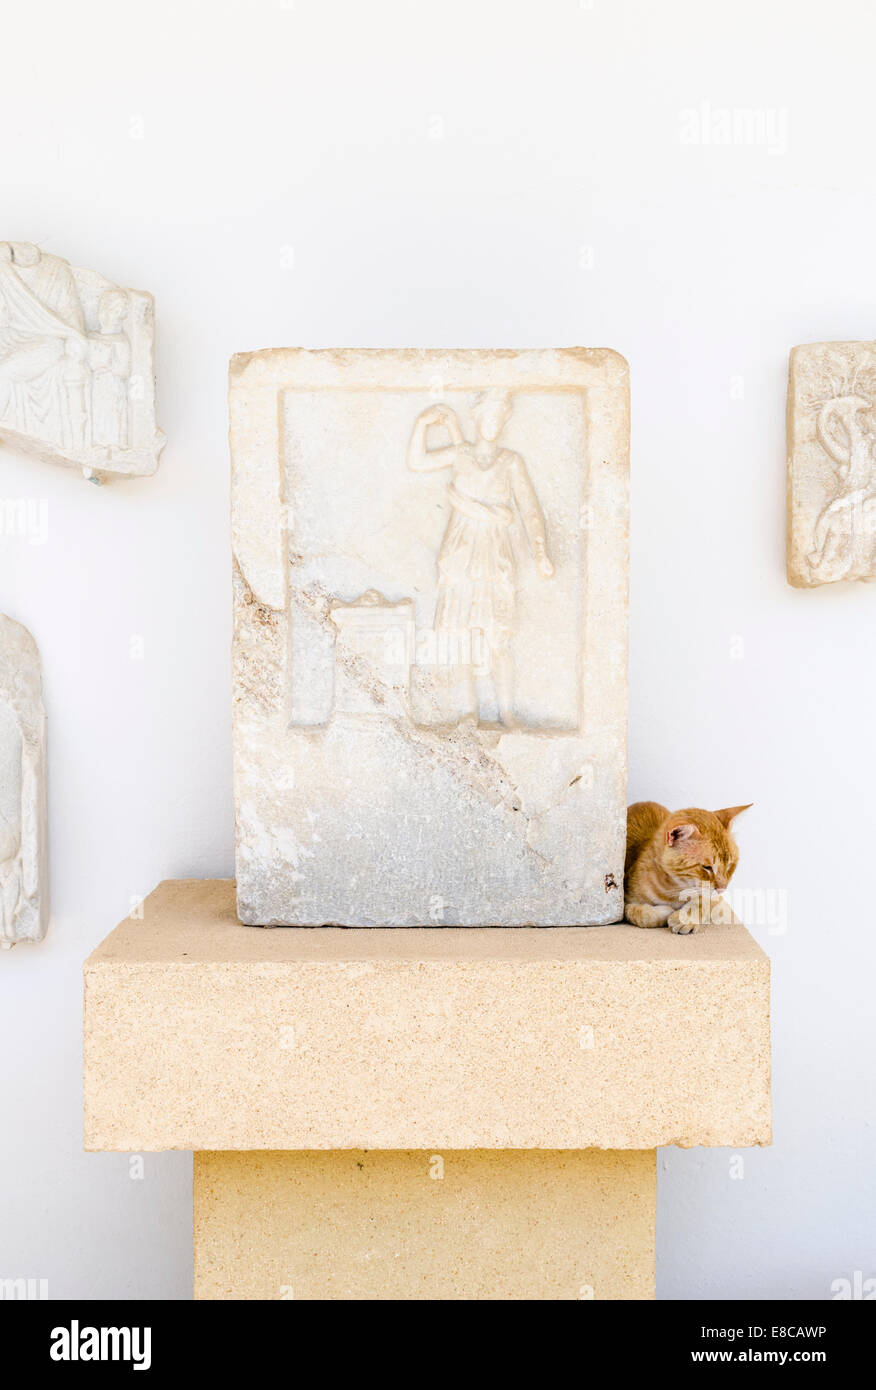 Détail d'un voulu en relief et cat dans le Musée Archéologique de Paros, Grèce Banque D'Images